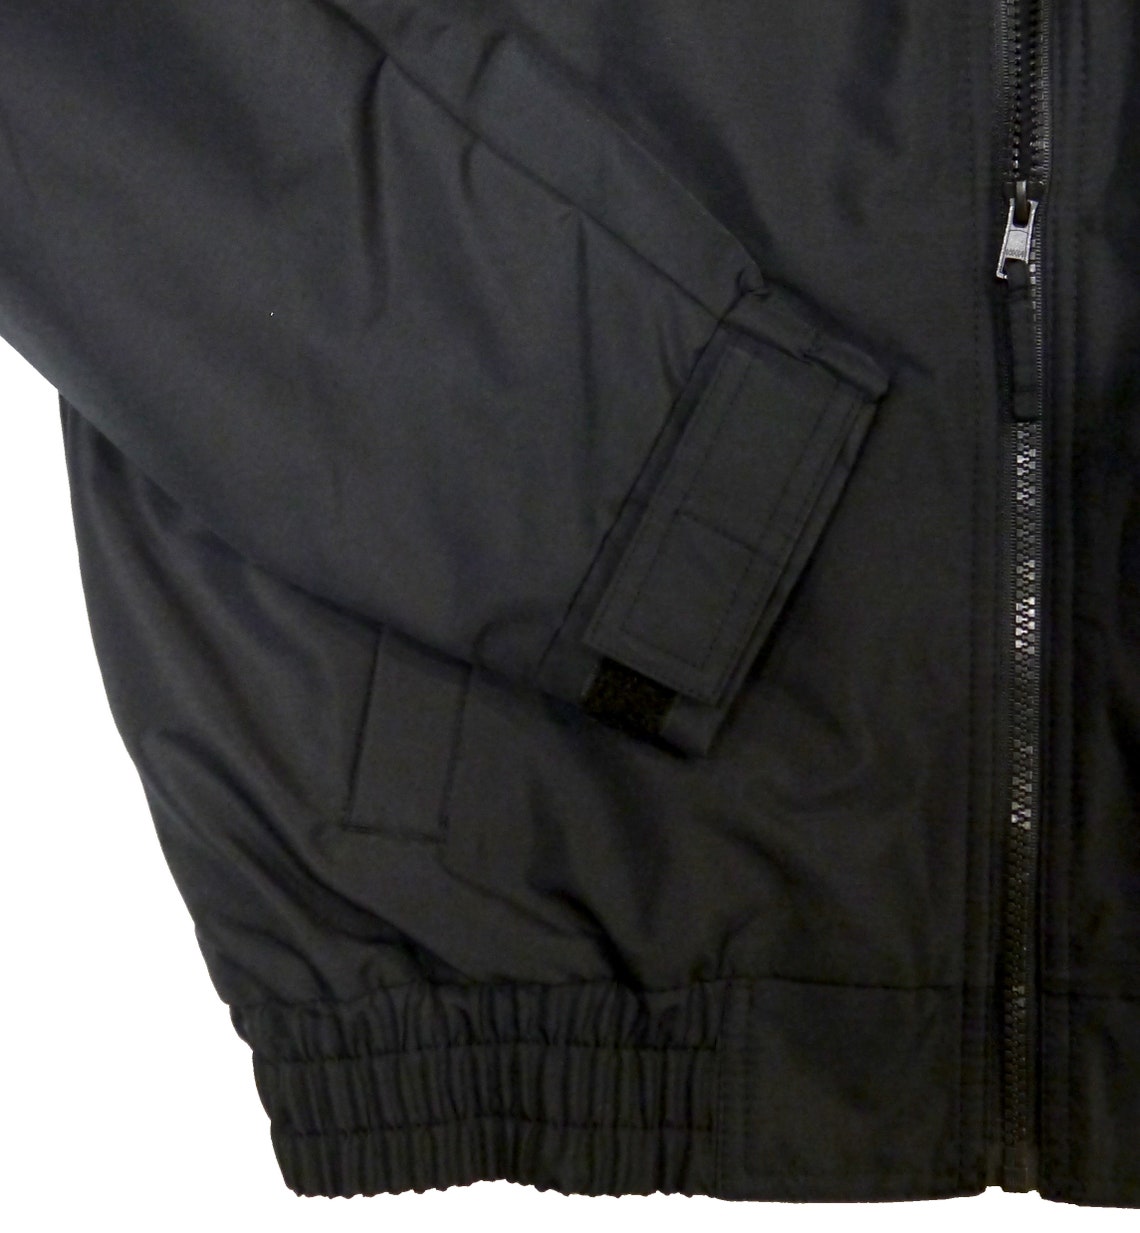 EMT economy jacket REFLECTIVE logo fleece lining Emergency | Etsy